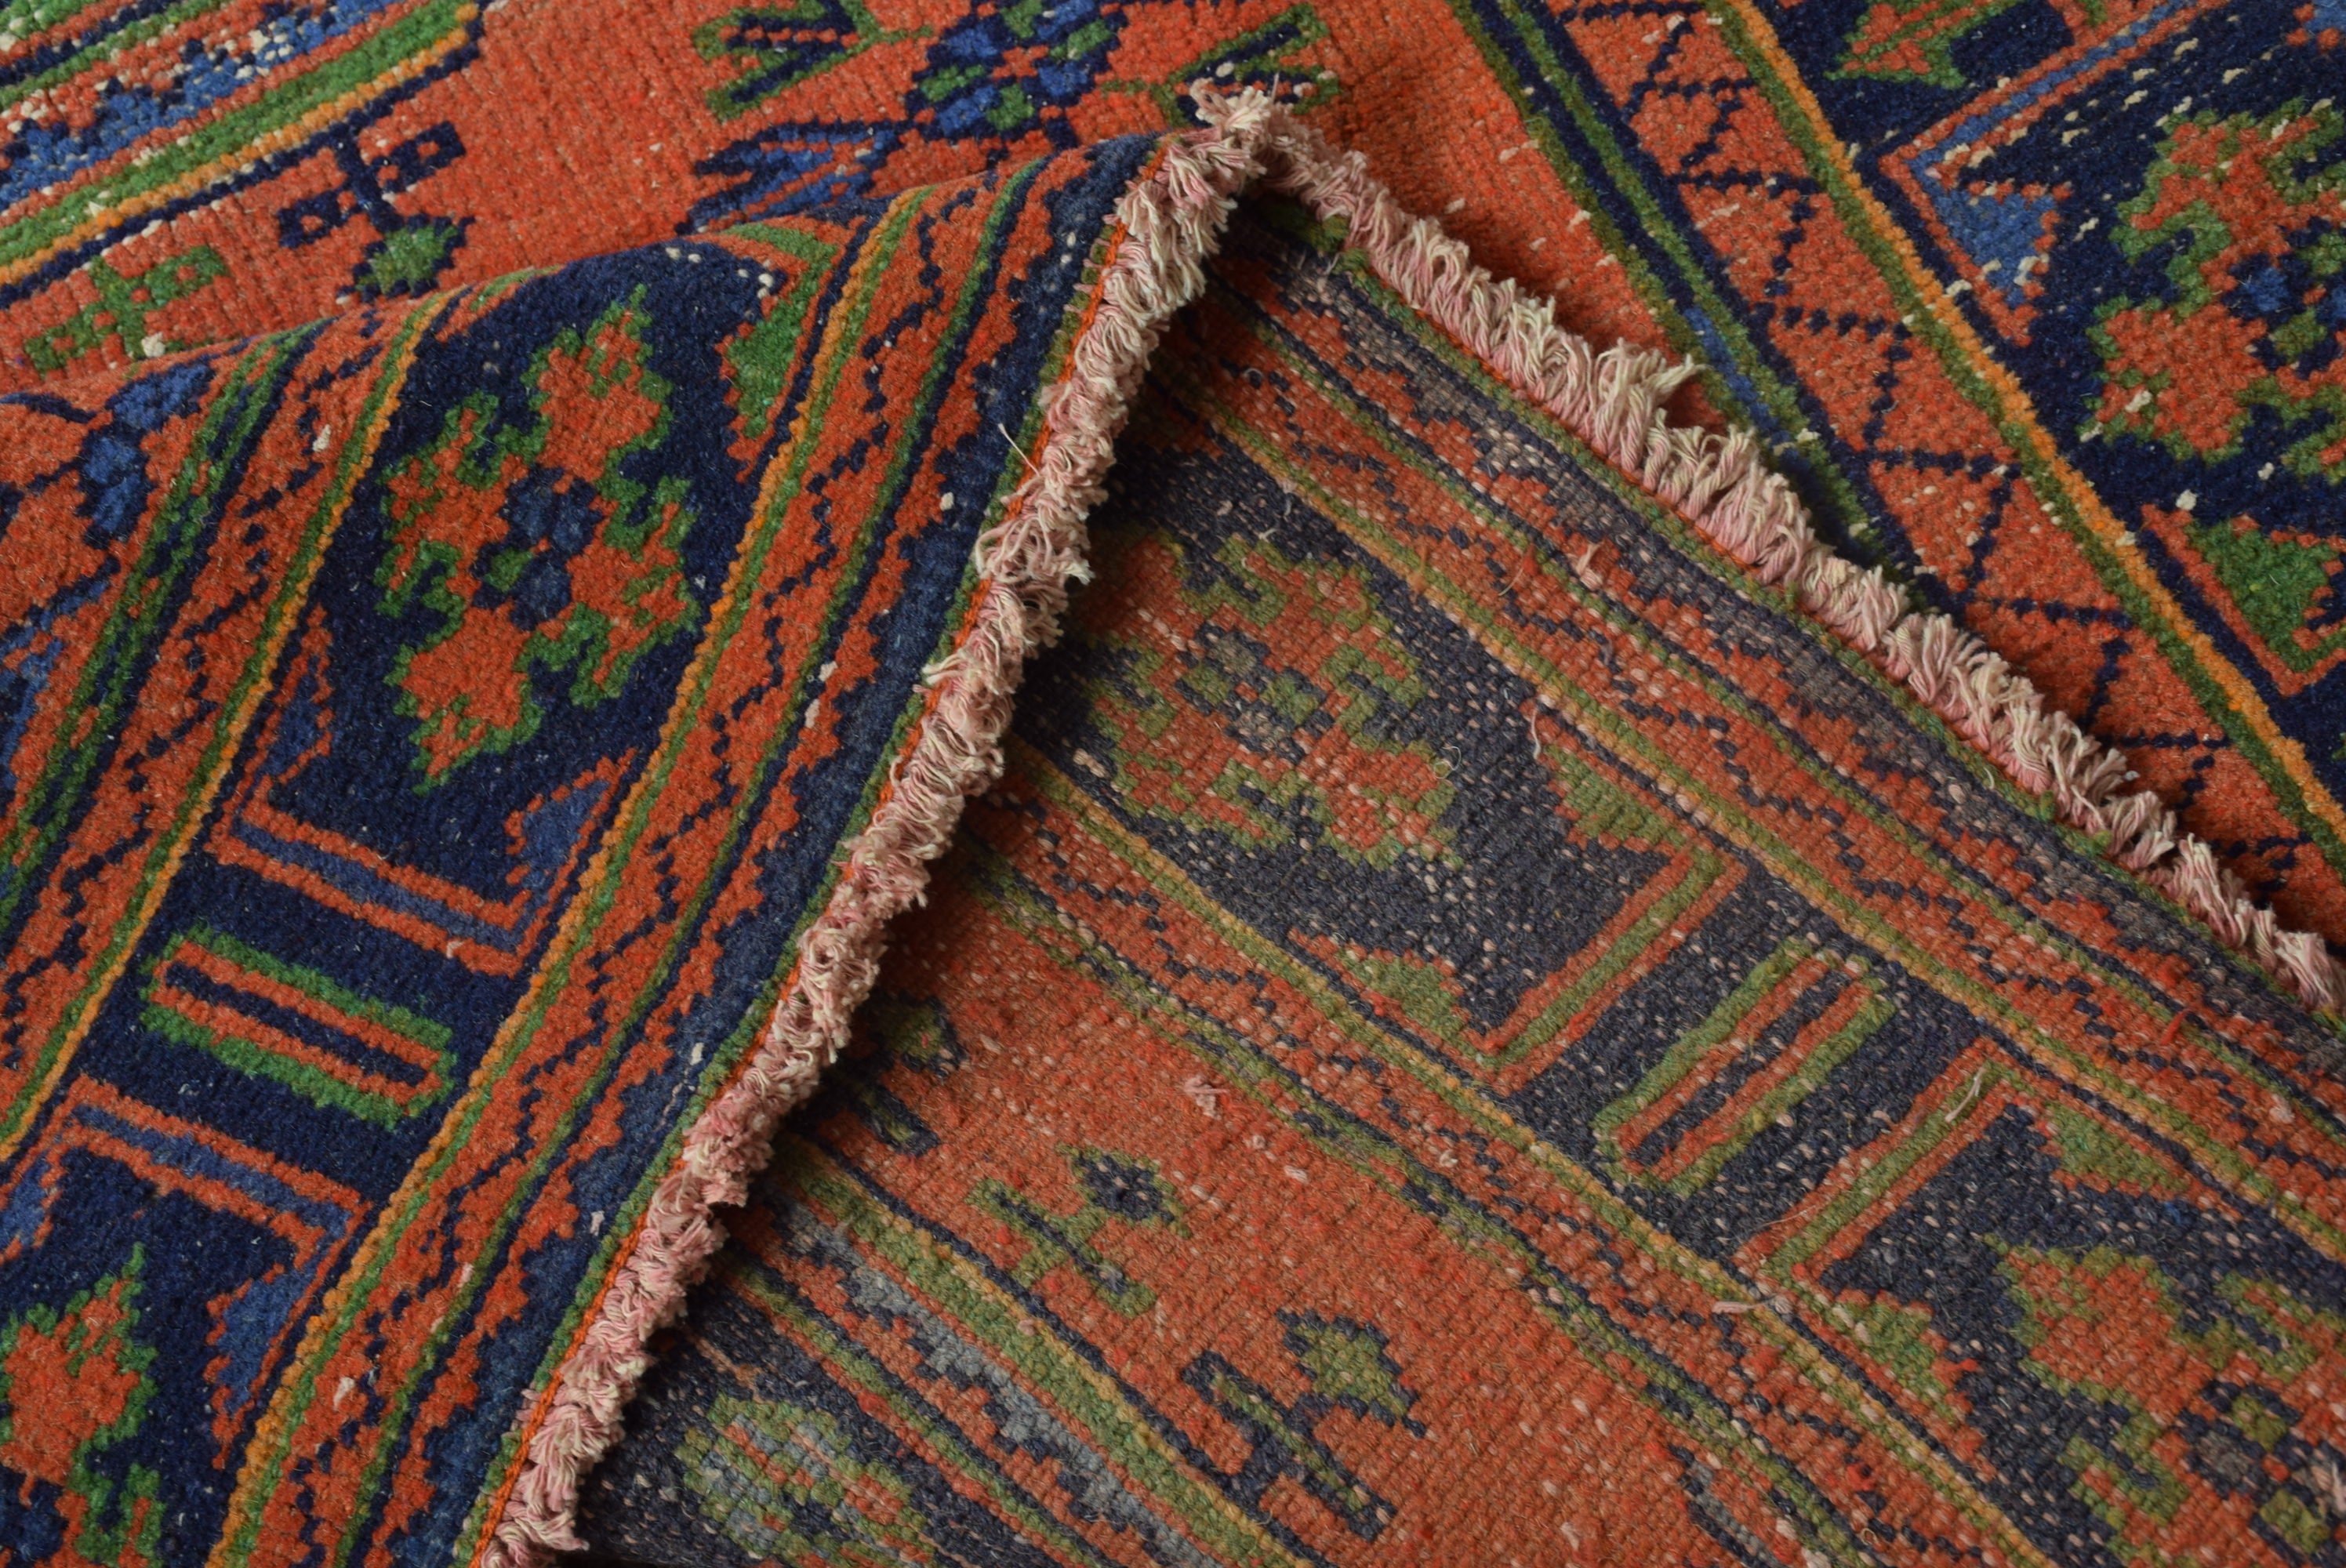 Red Floor Rug, Anatolian Rugs, Oriental Rugs, Handwoven Rugs, Corridor Rug, 4.5x11.5 ft Runner Rug, Turkish Rug, Stair Rugs, Vintage Rugs